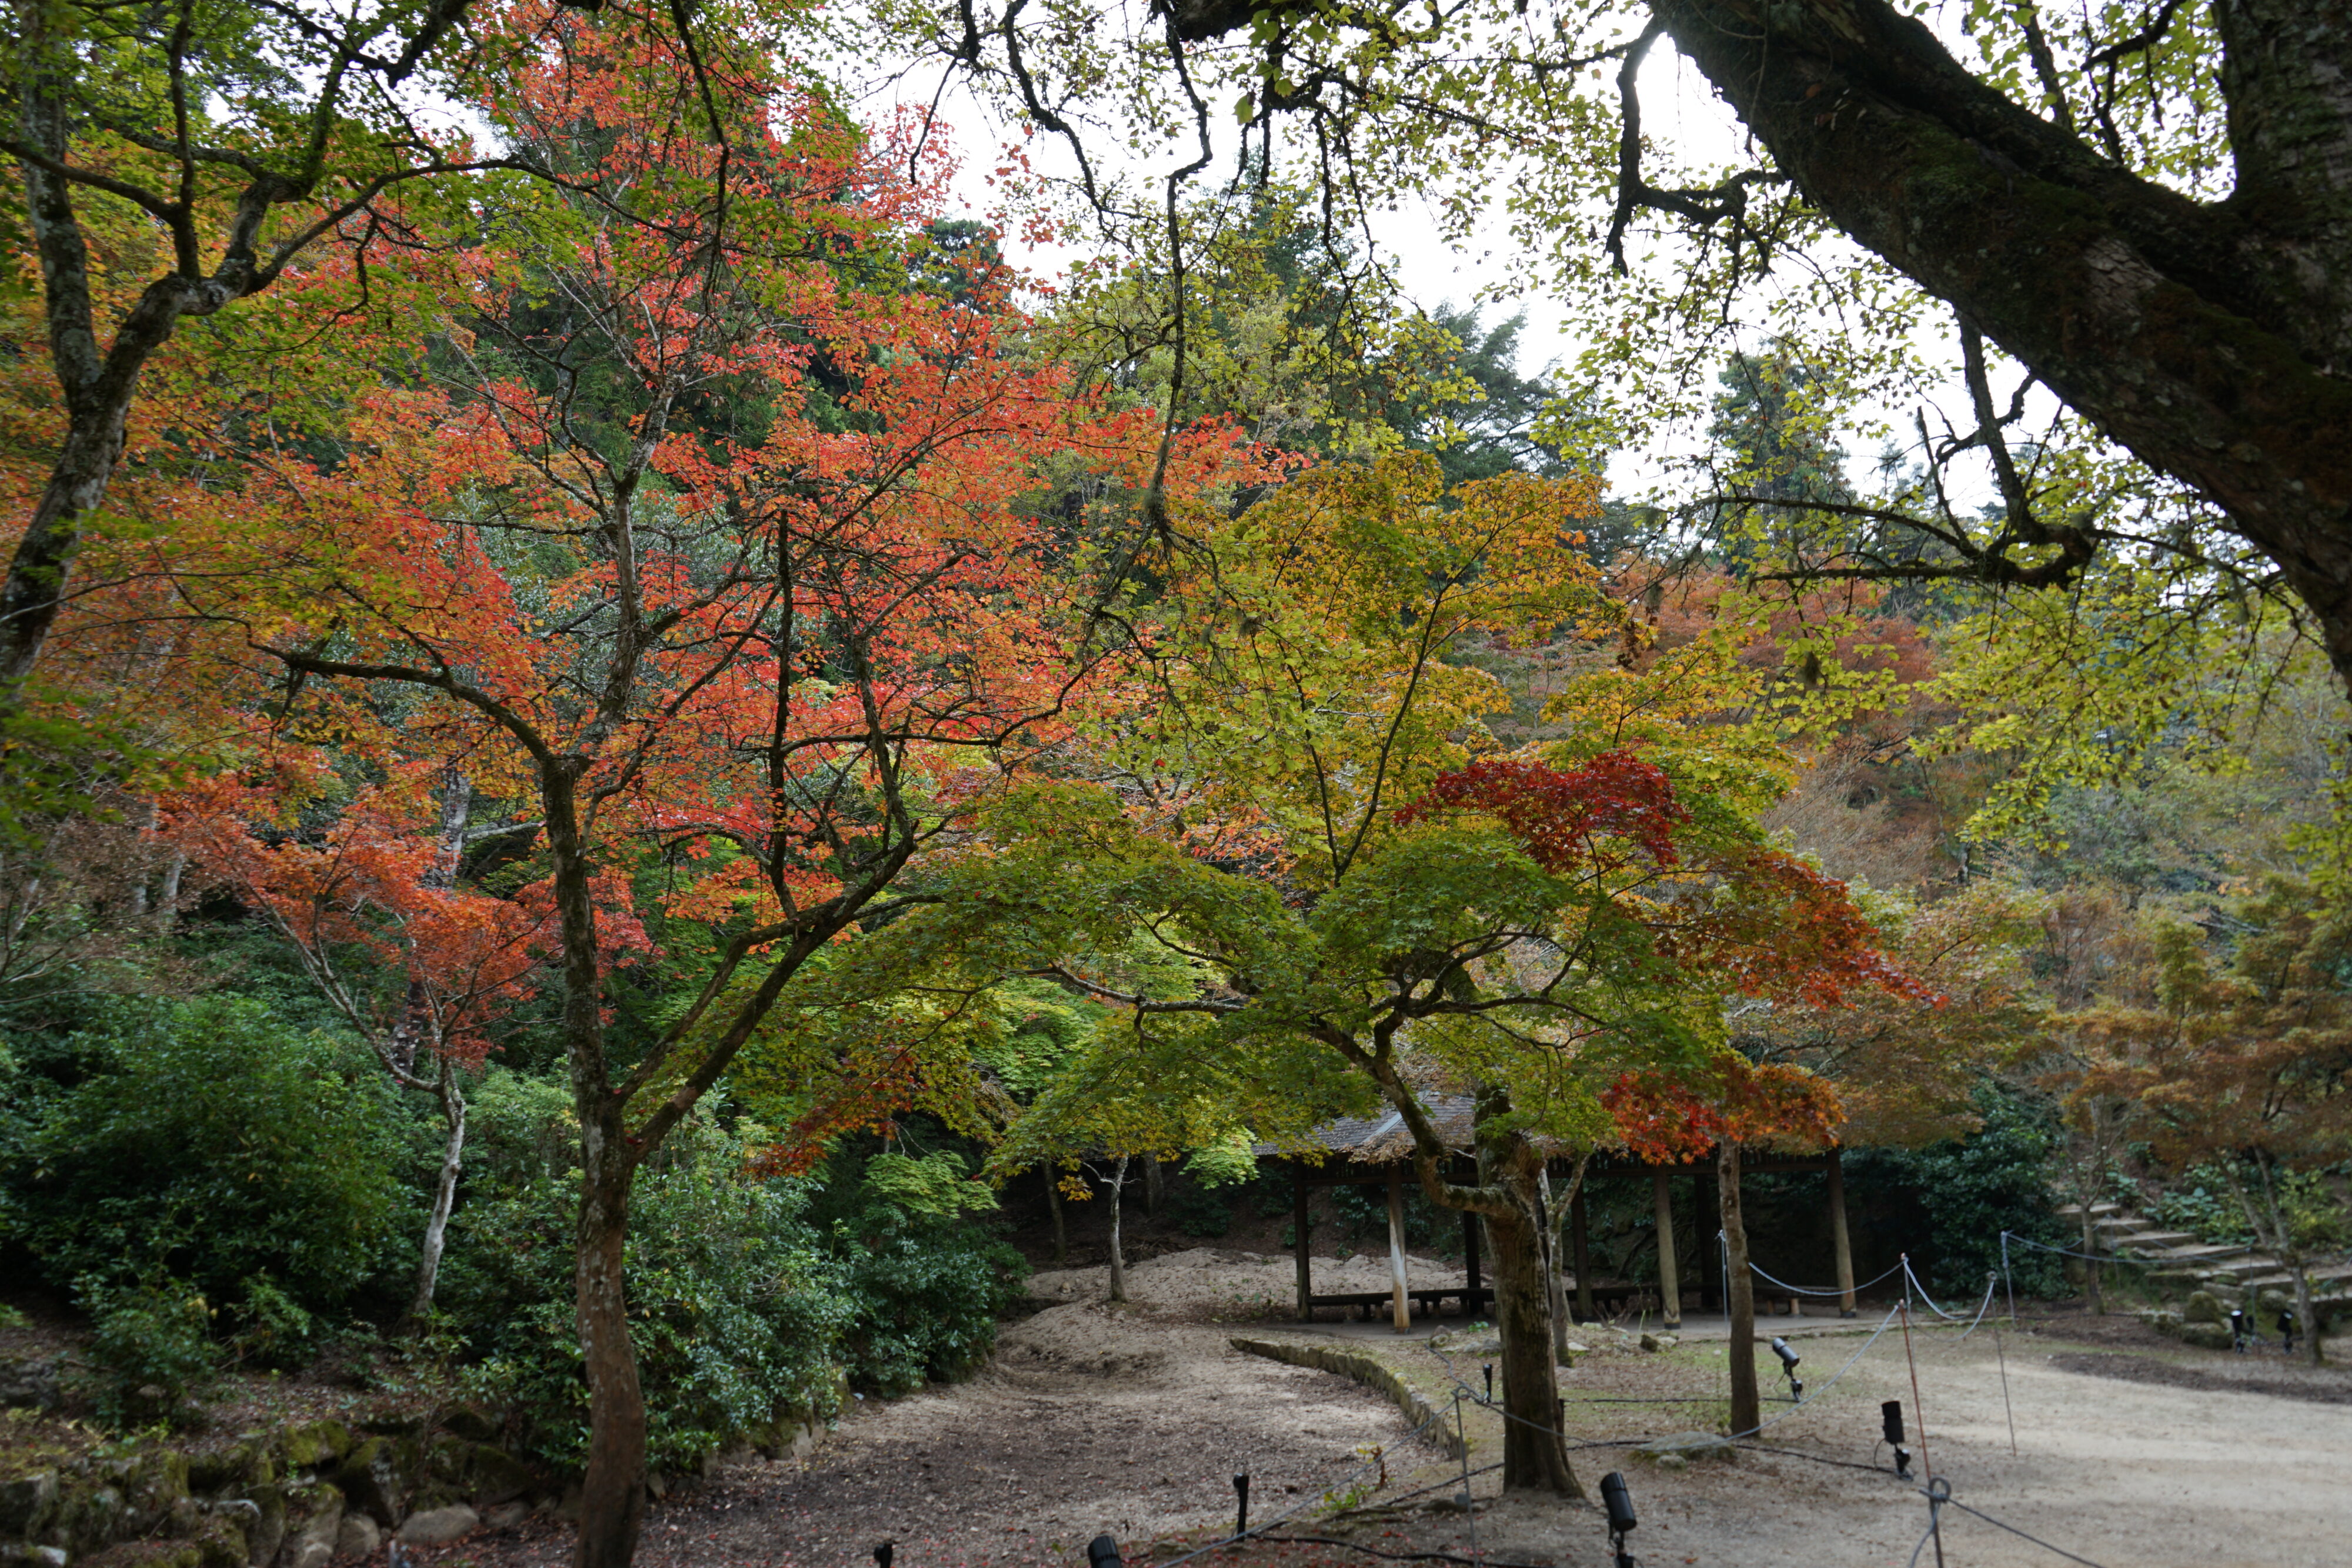 Blick auf den Park mit Japanischen Ahornbäumen. Teilweise sind die Blätter rot gefärbt. Im Hintergrund eine Treppe und eine überdachte Sitzgelegenheit.